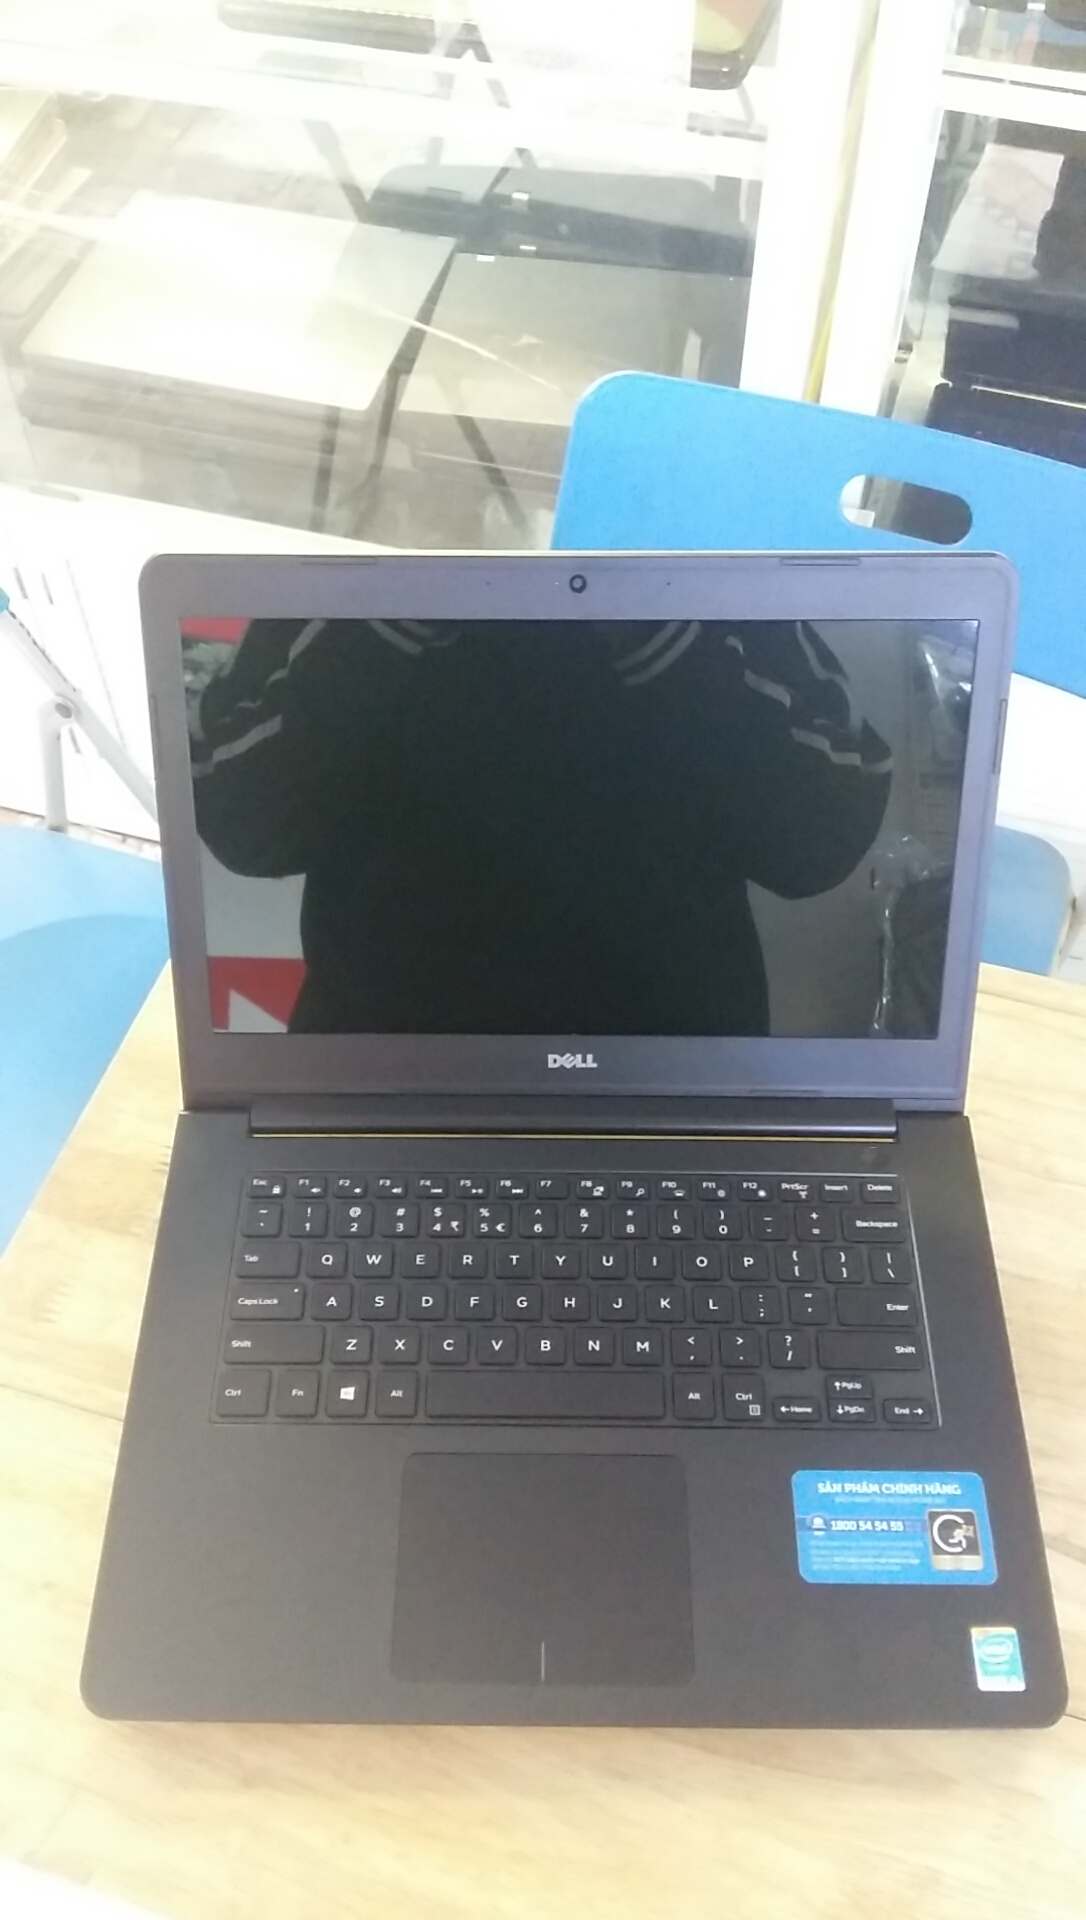 Bán laptop cũ Dell Inspiron 5447 giá rẻ tại Bắc Ninh